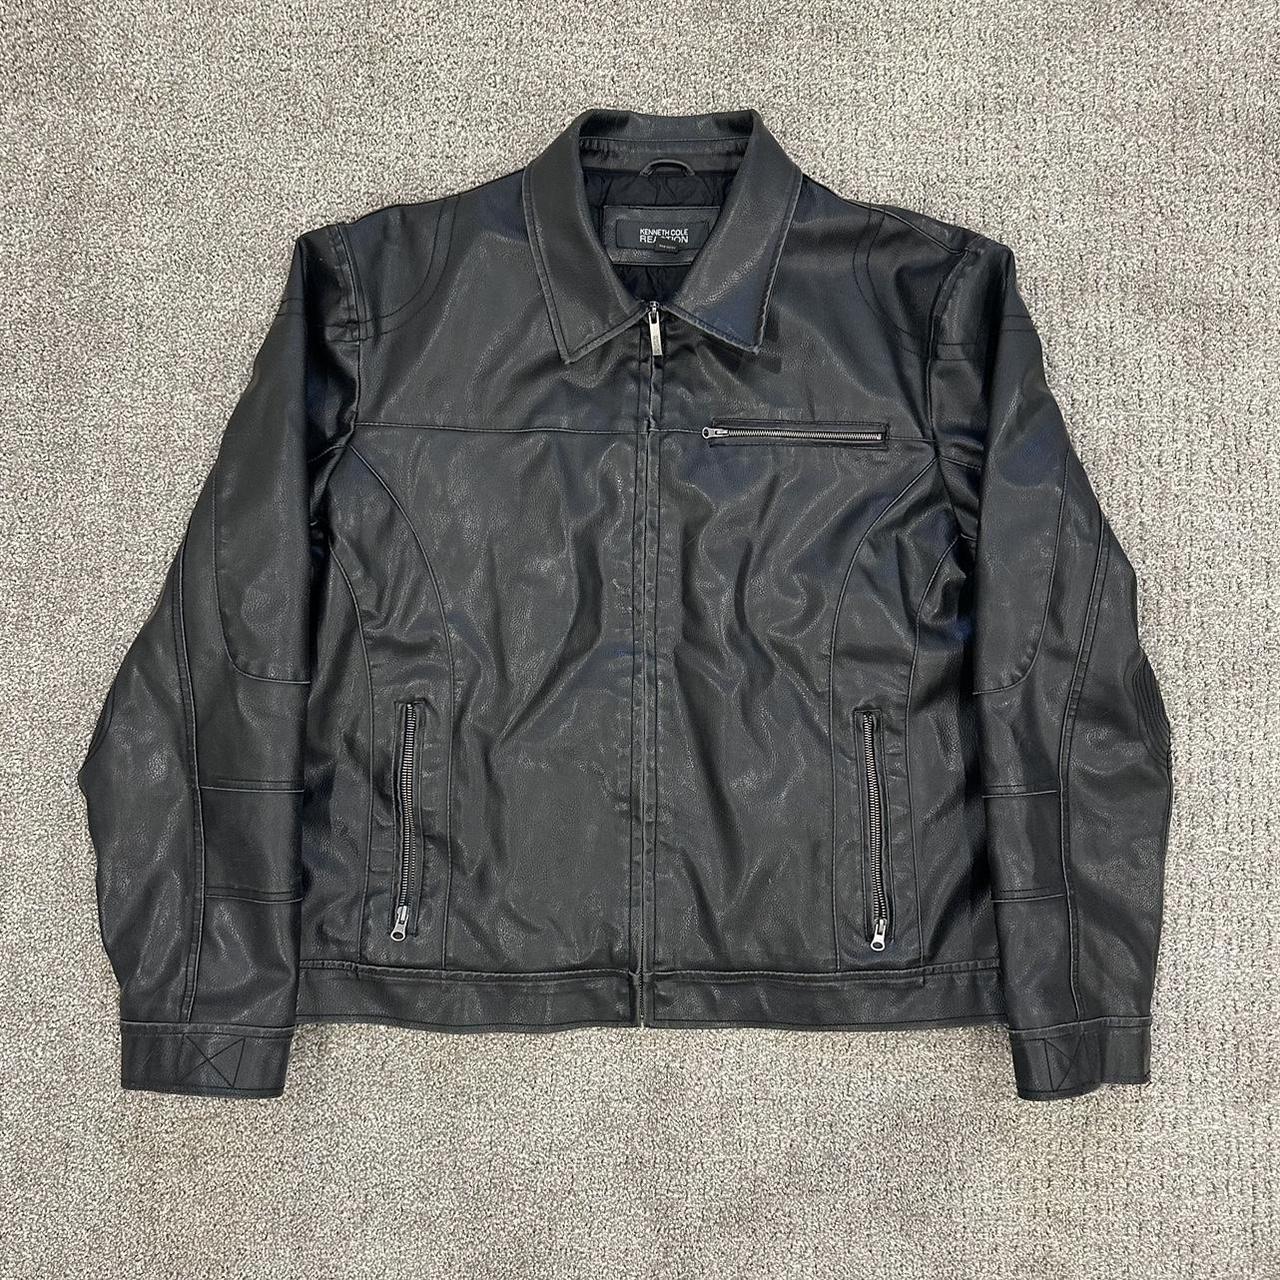 Kenneth Cole reaction leather jacket - Depop